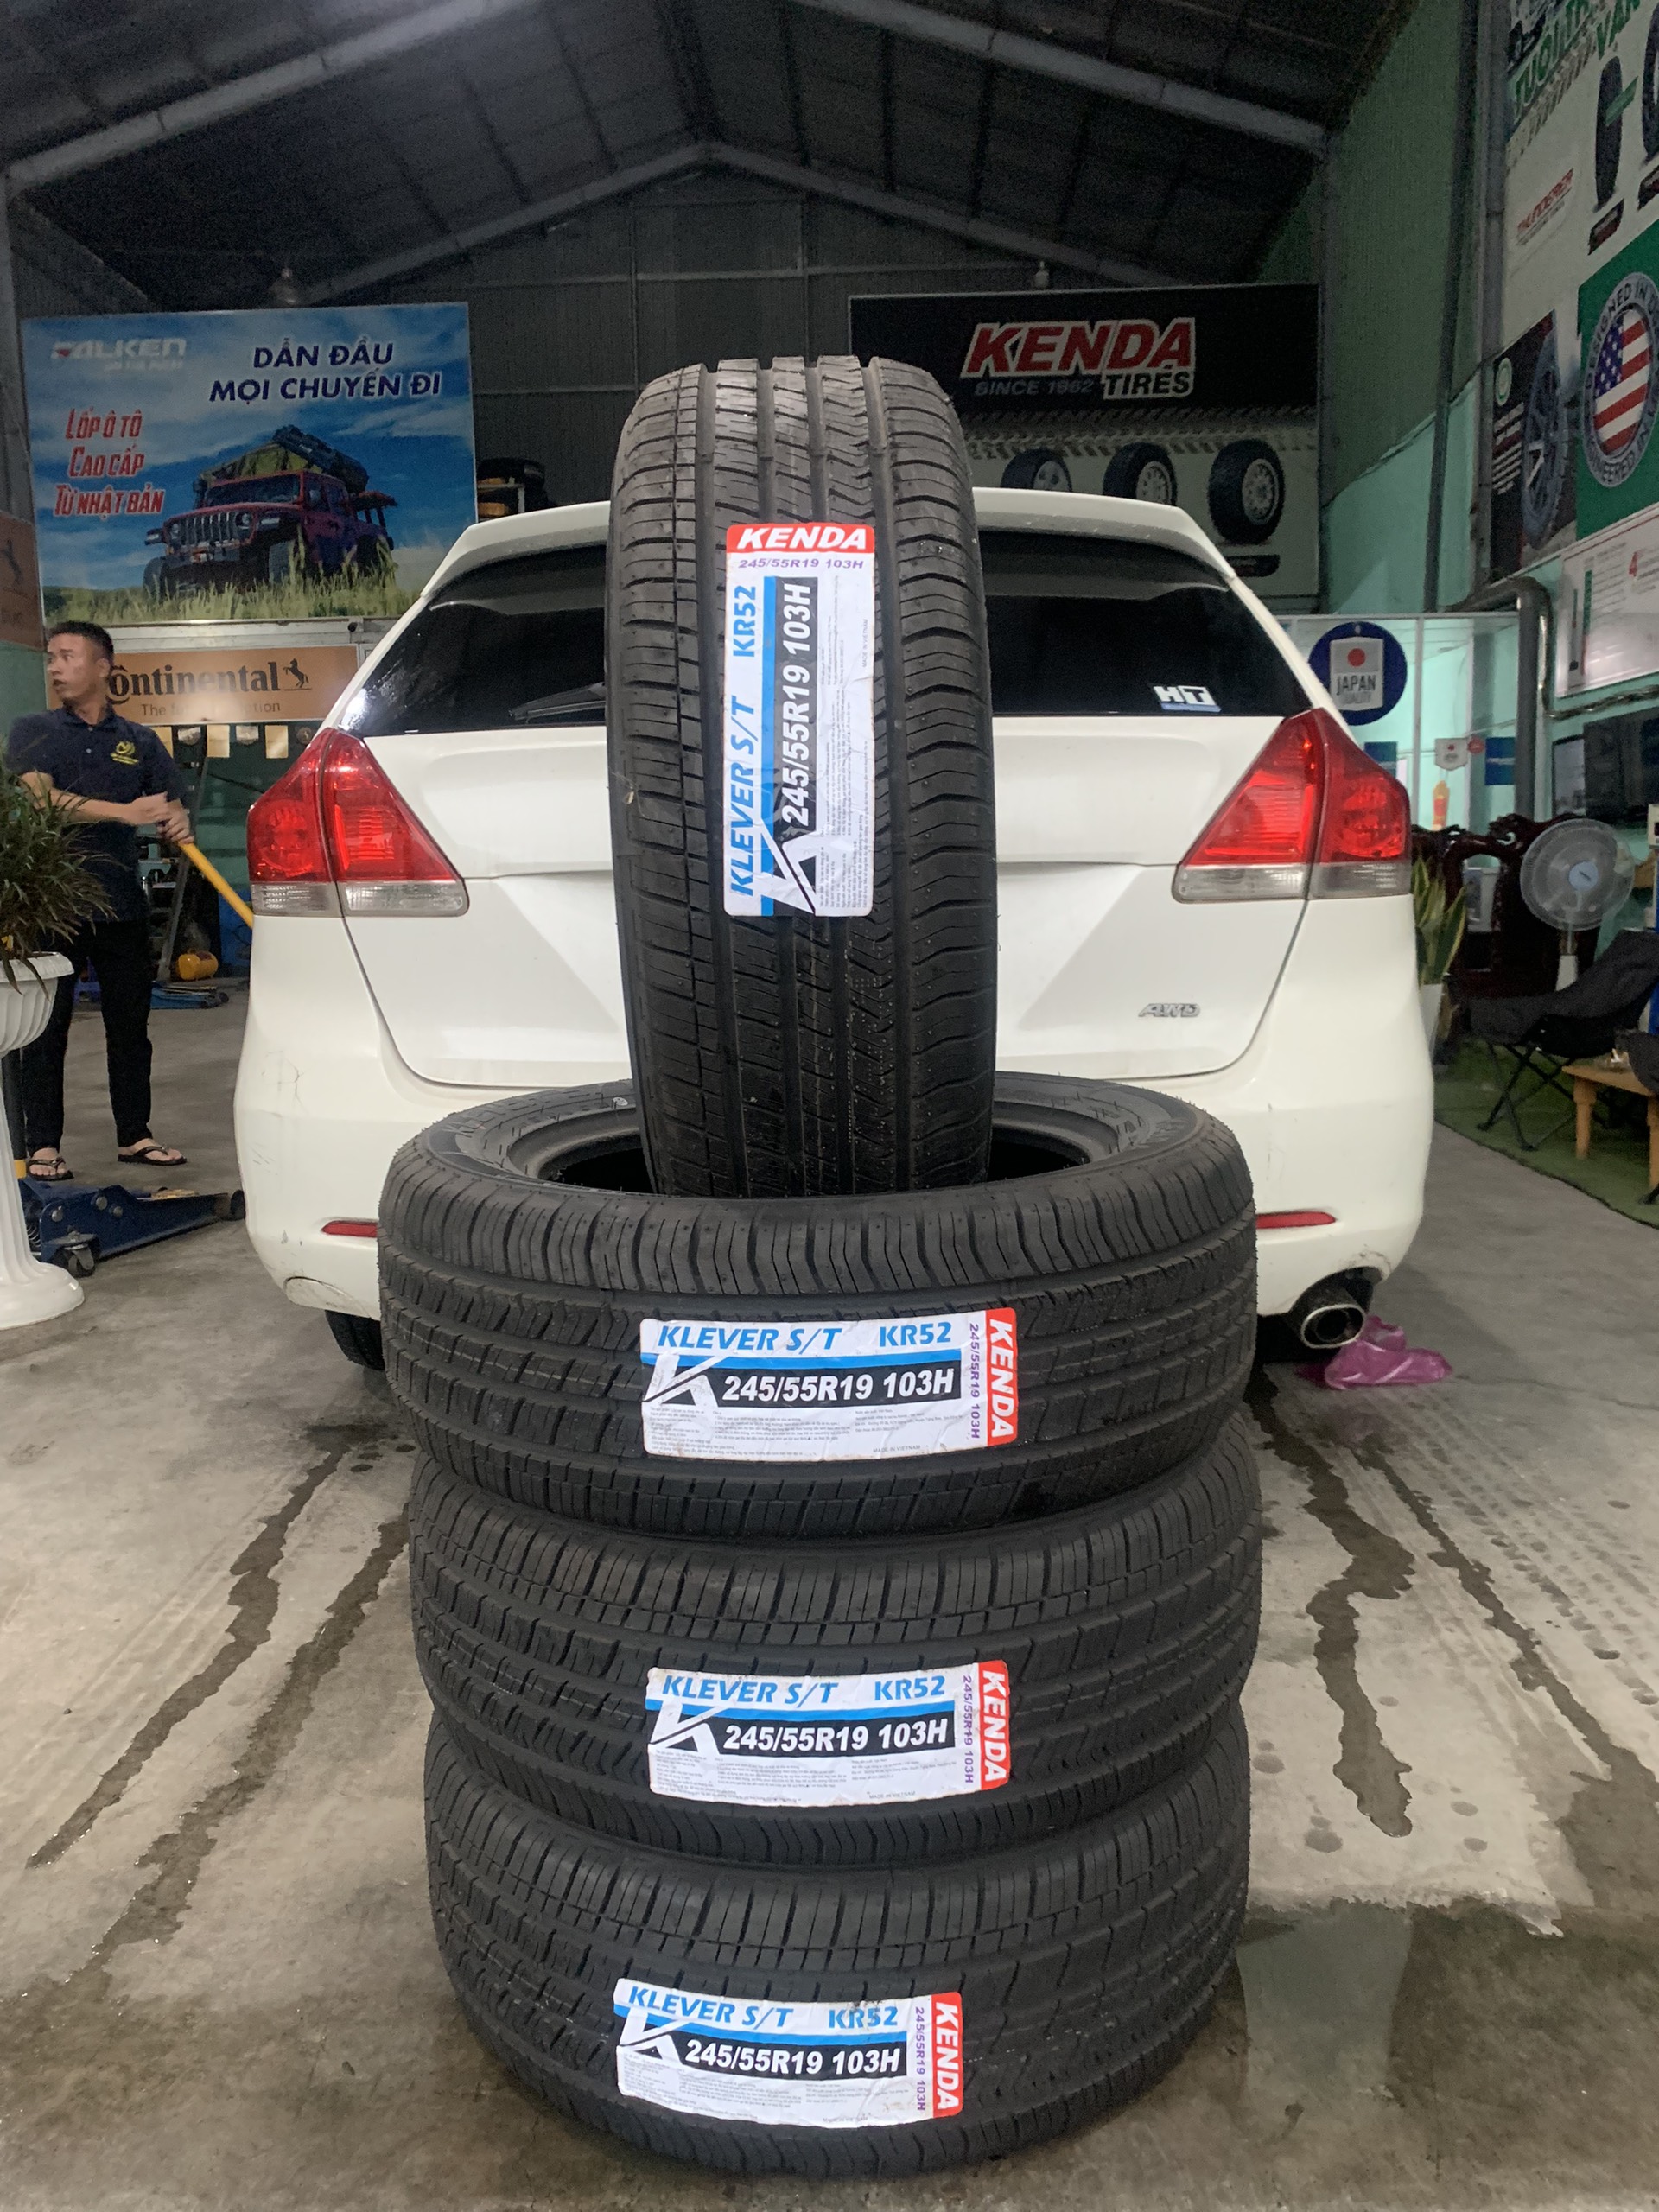 TƯ VẤN : Thay lốp xe Toyota Venza chính hãng ở Long Thành, Đồng Nai.